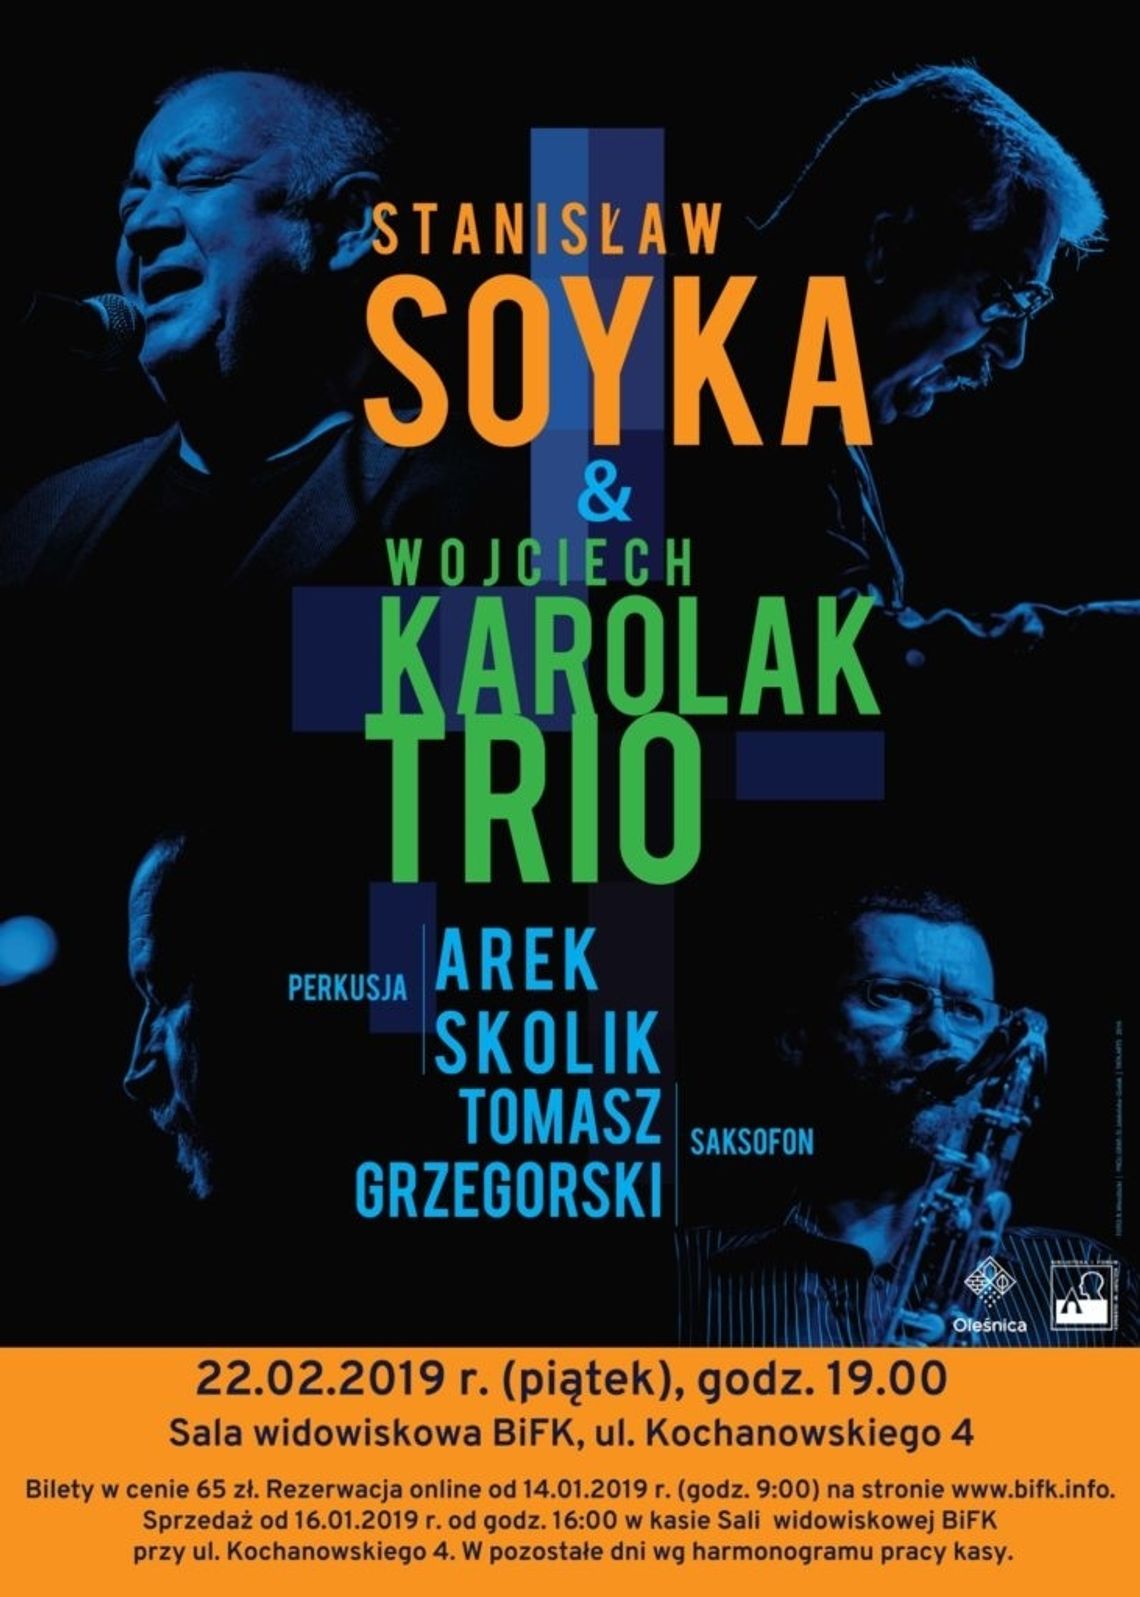 Koncert Soyka & Karolak Trio